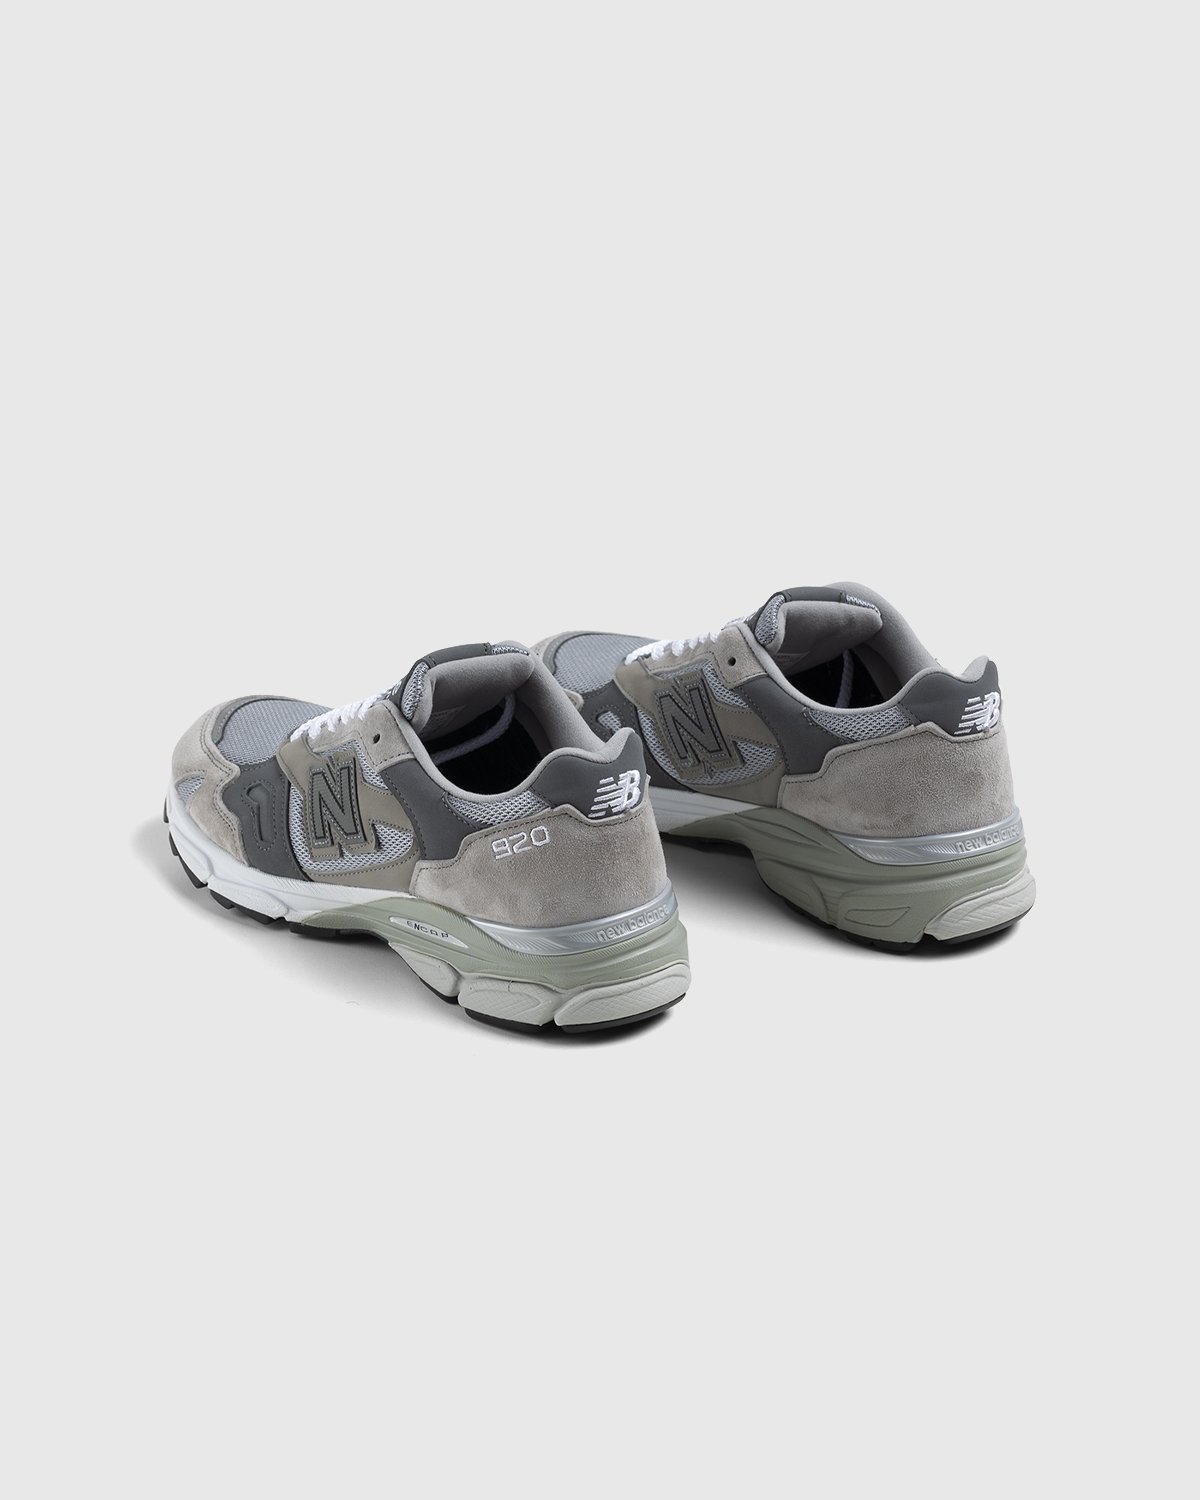 New Balance - M920GRY Grey - Footwear - Grey - Image 4